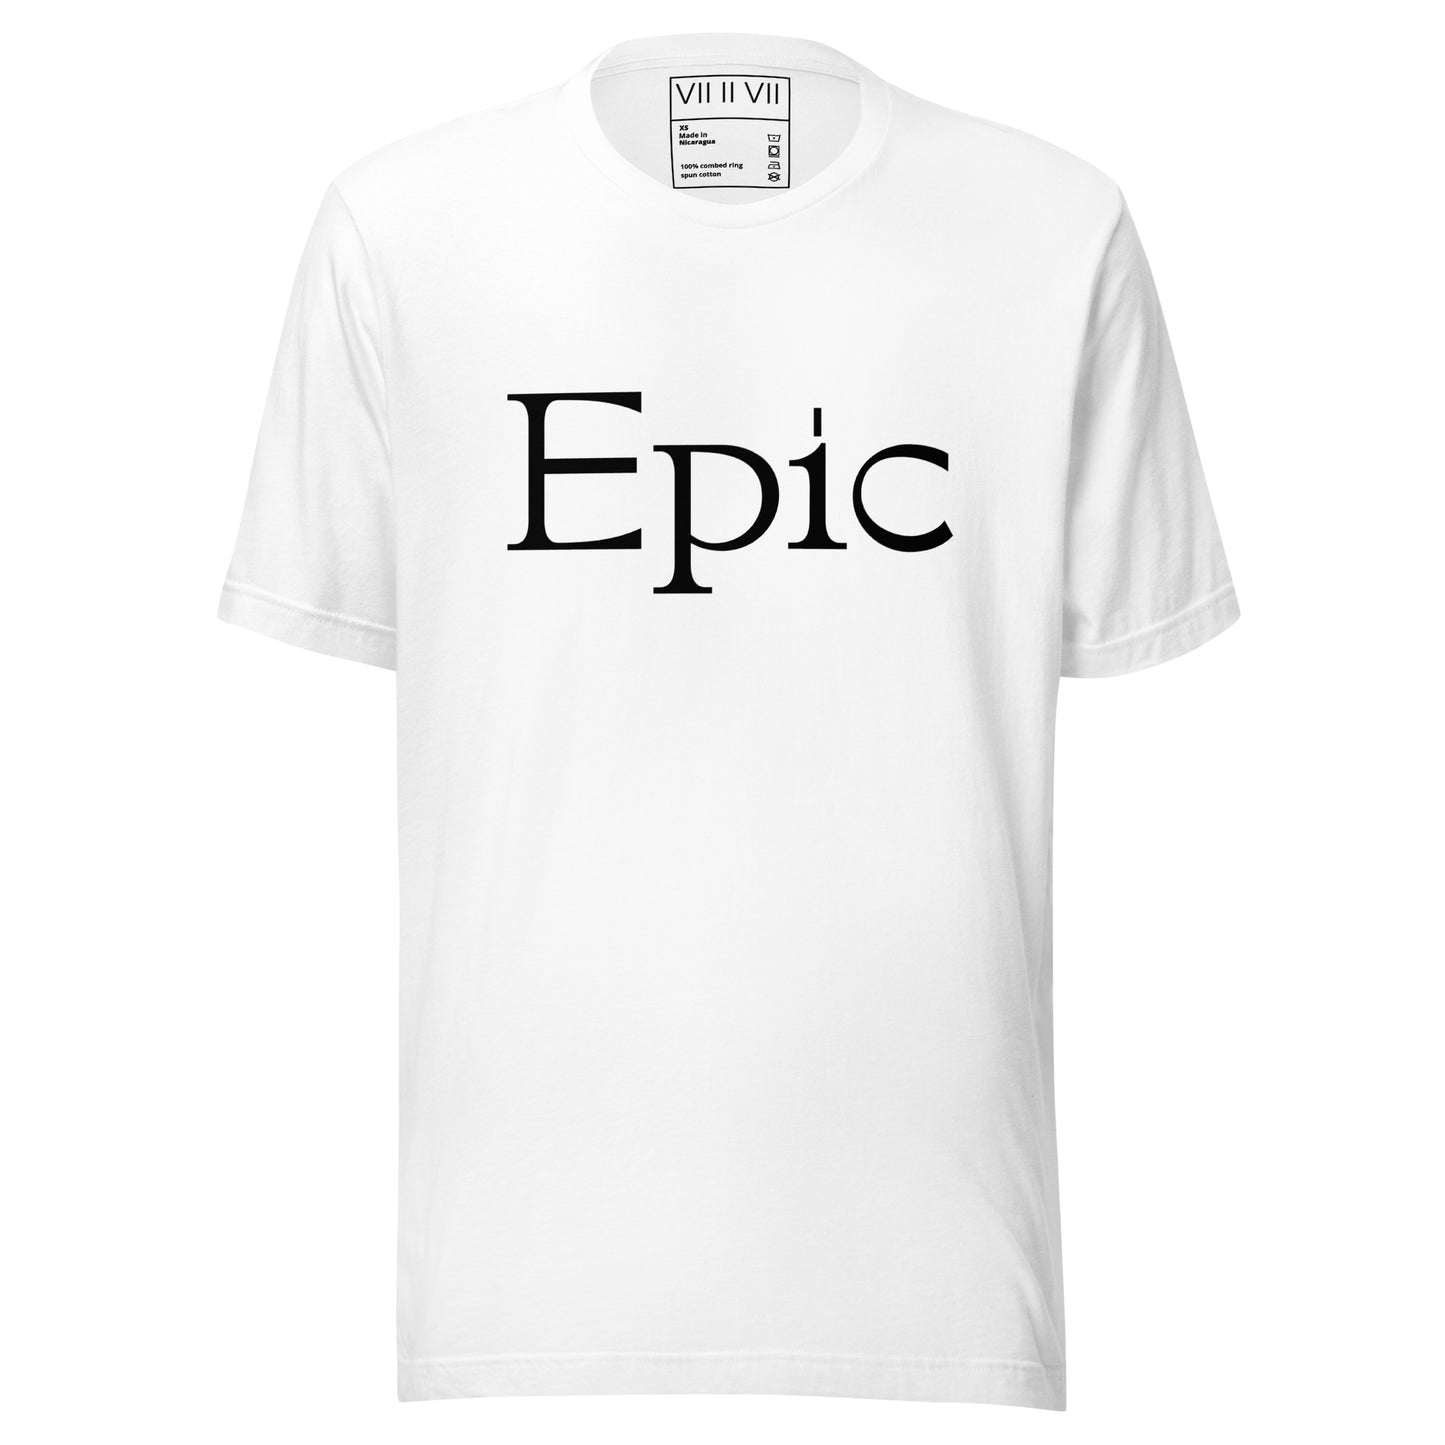 Epic- Tee